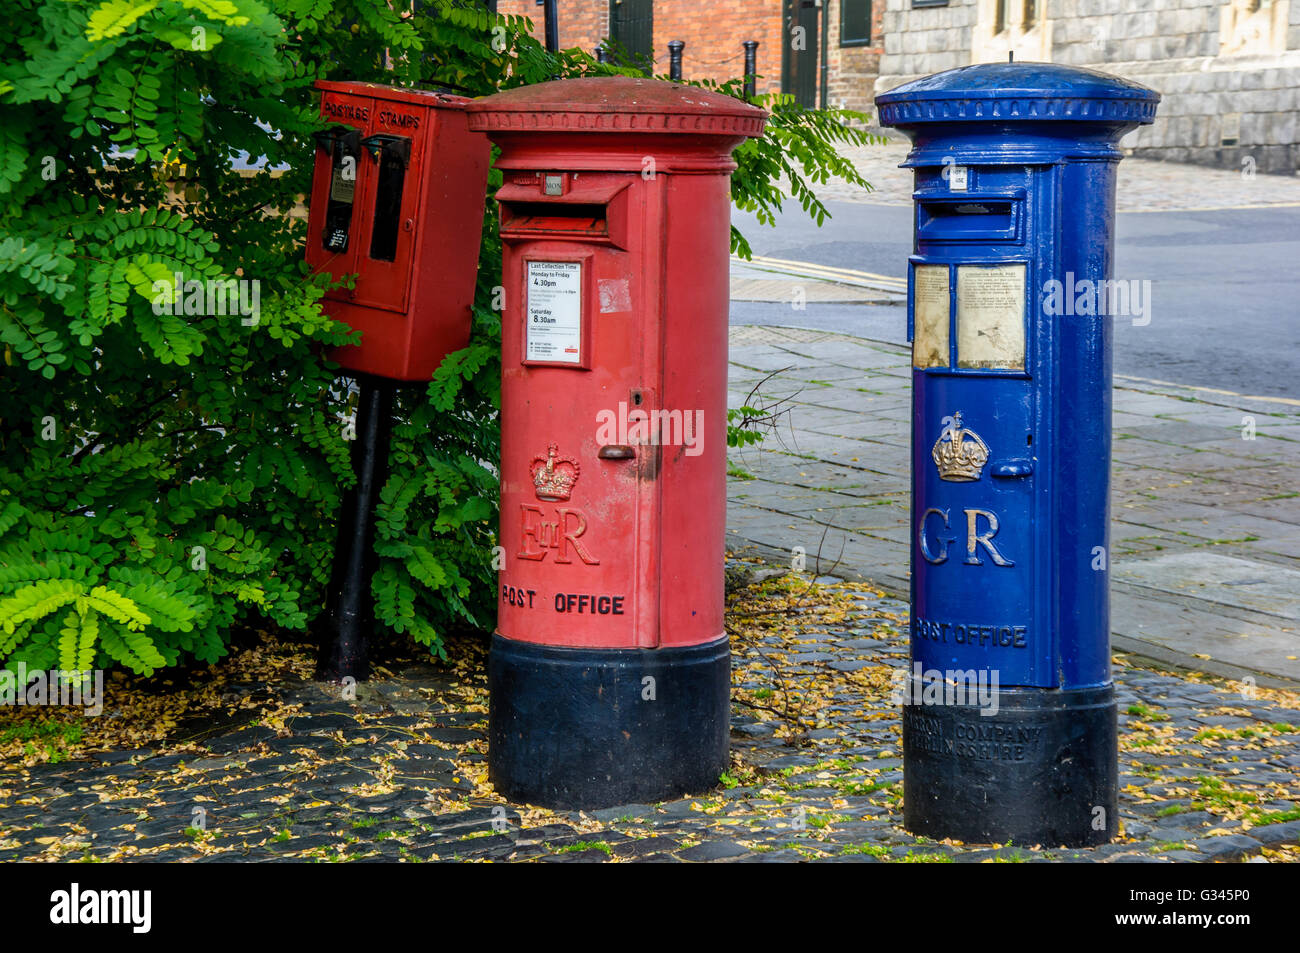 Rot Briefmarke Maschine und Briefkasten gekennzeichnet EIIR, alte blaue  Luftpost Säule Kästchen markiert GR, Windsor, Berkshire, England  Stockfotografie - Alamy